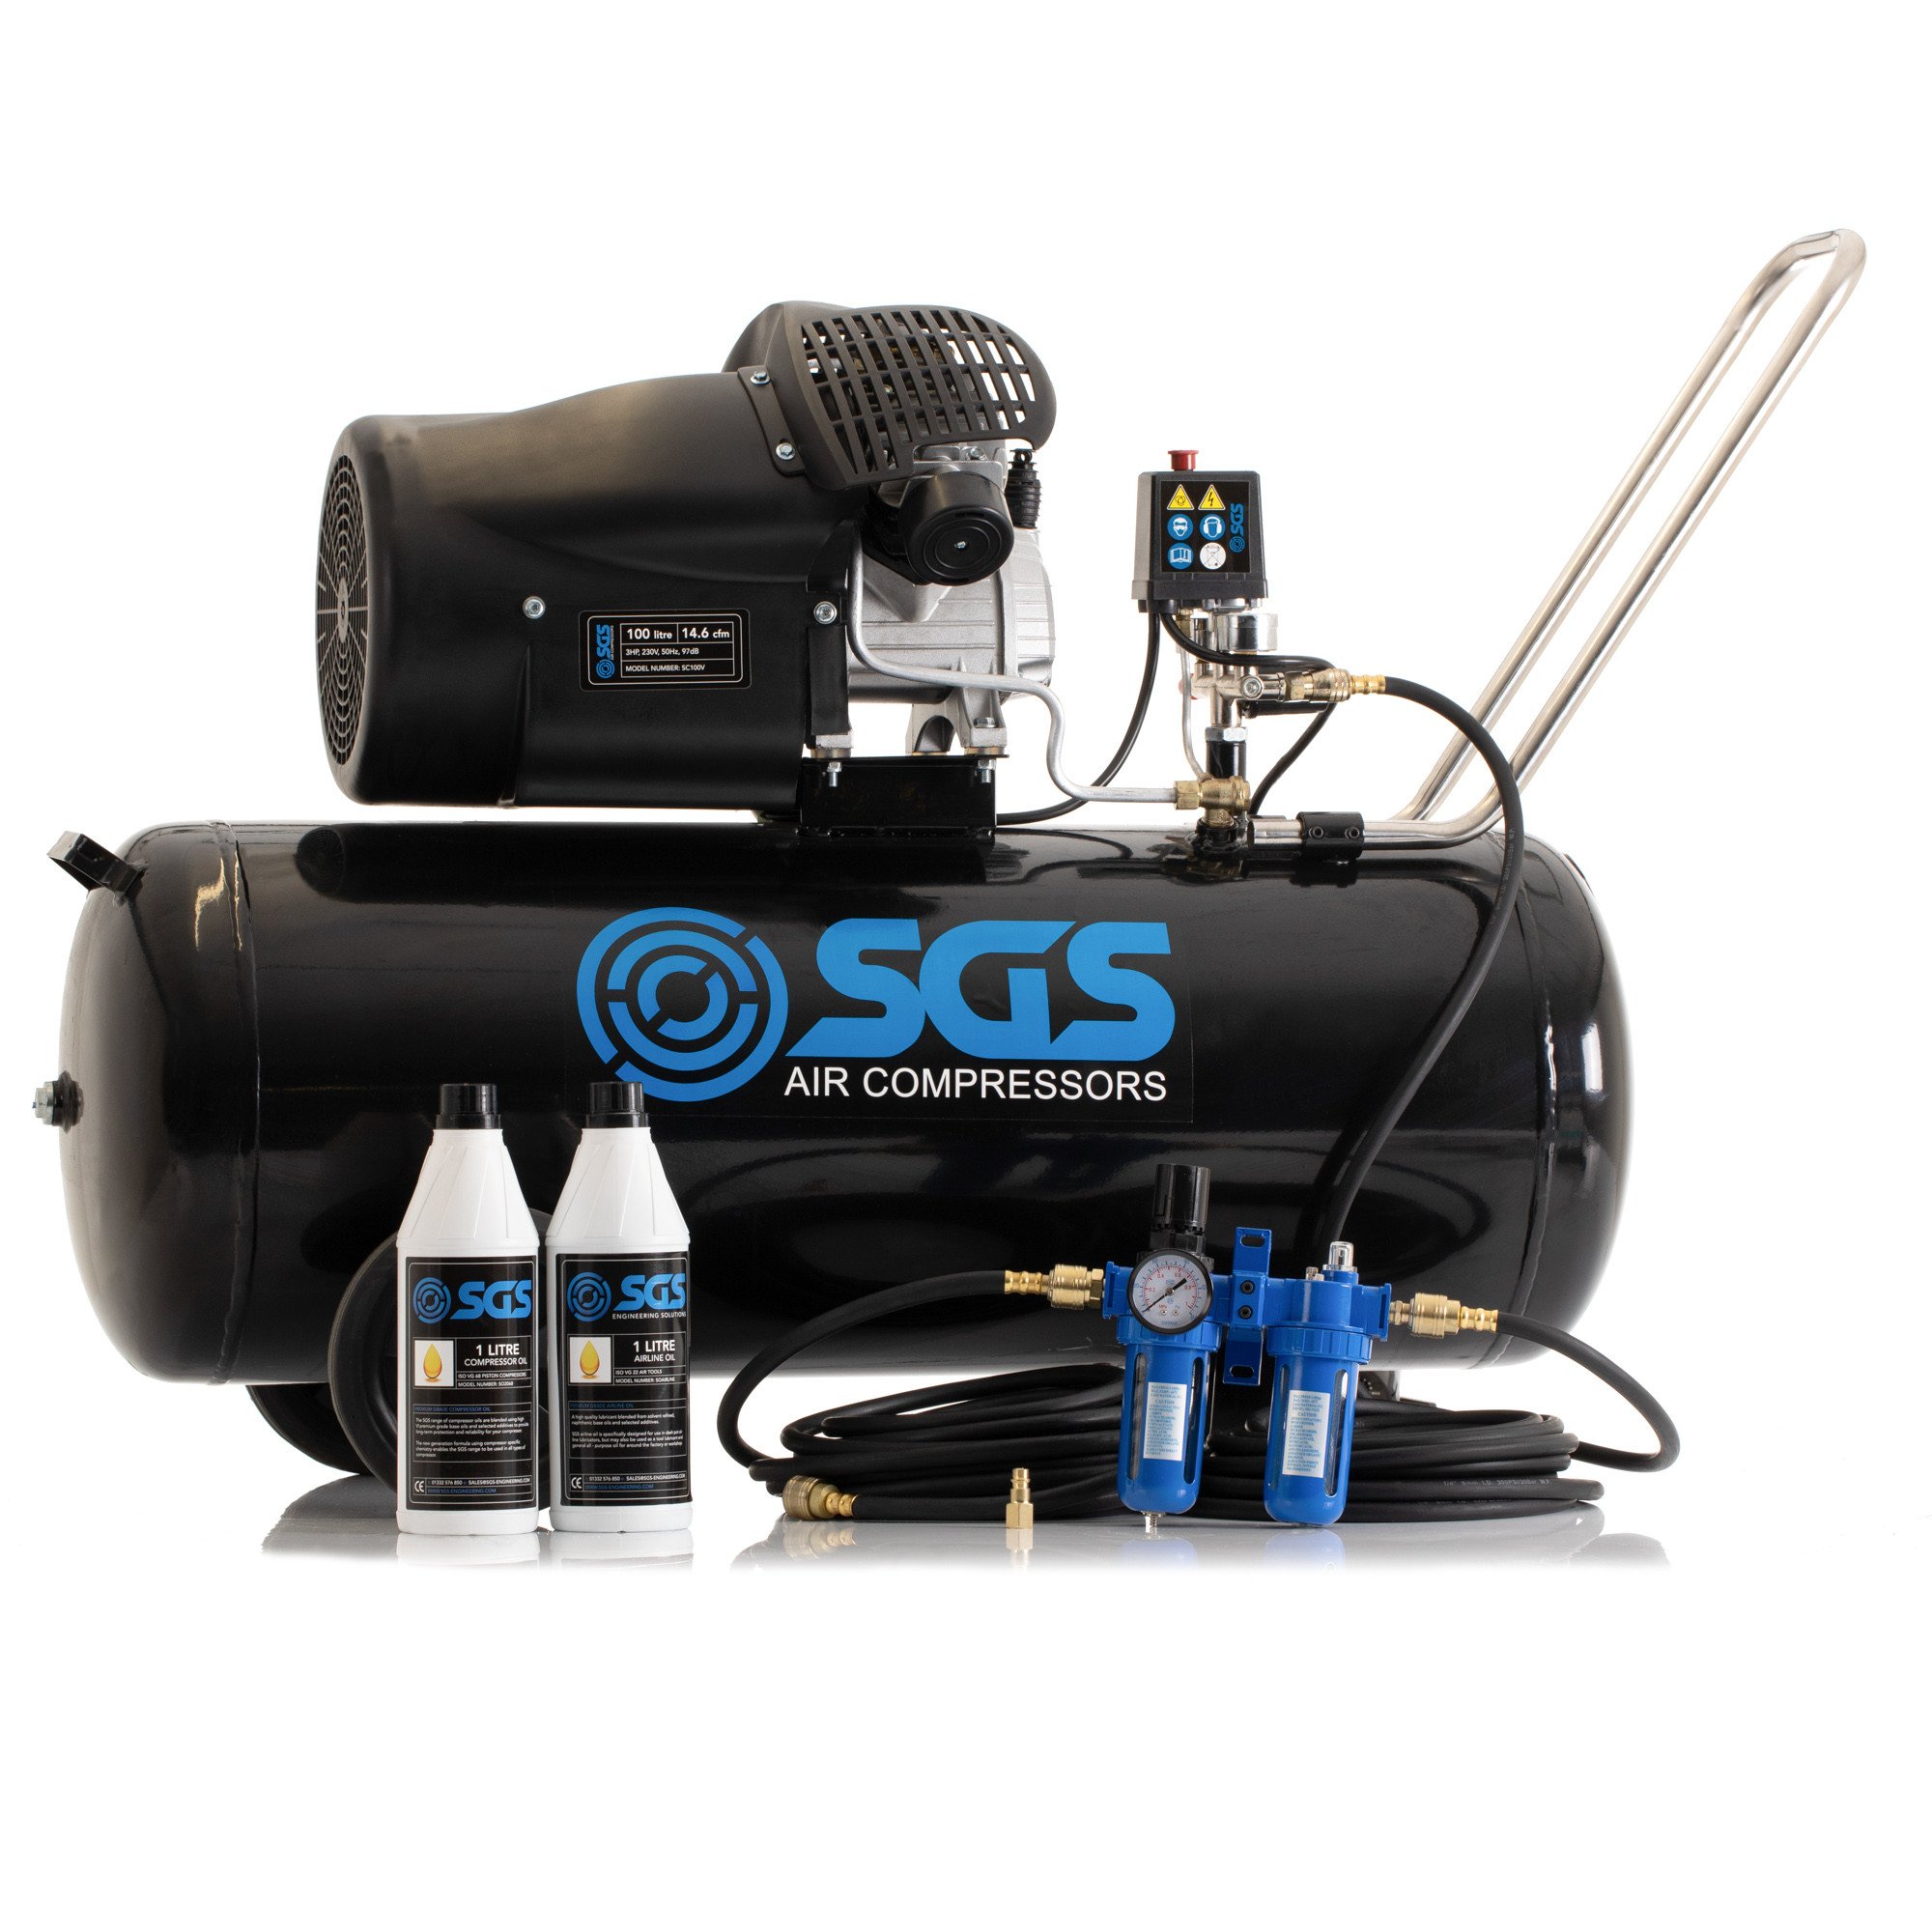 SGS 100升直接驱动空气压缩机& Starter Kit 3.0 - 14.6 cfm惠普100 l